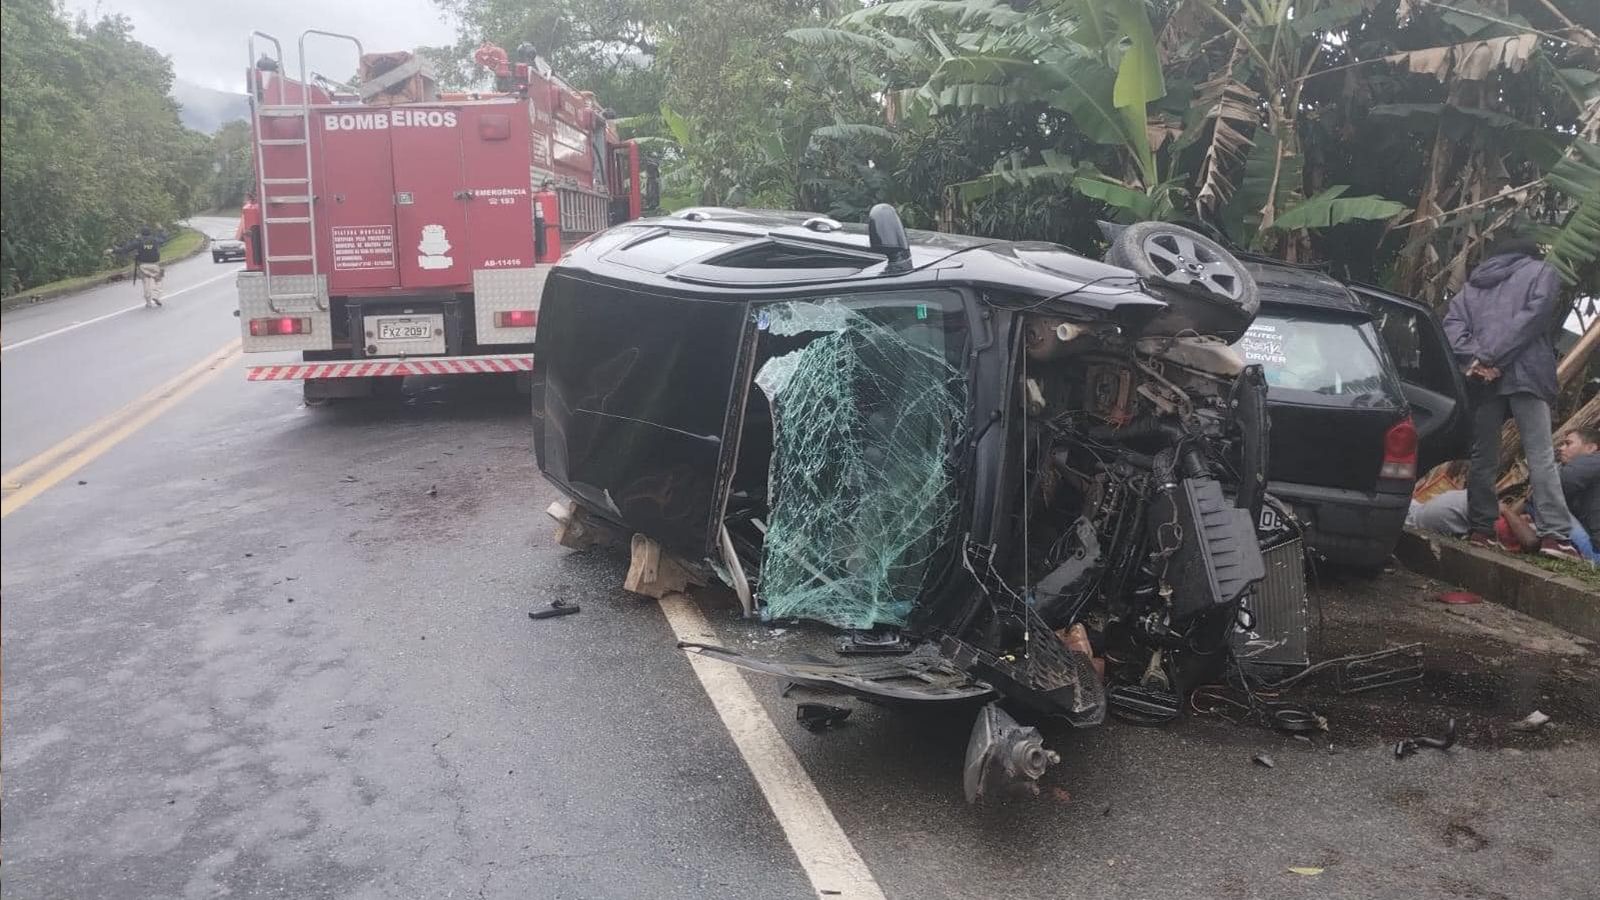 Dois carros destruídos após grave acidente na Rio Santos, em Ubatuba